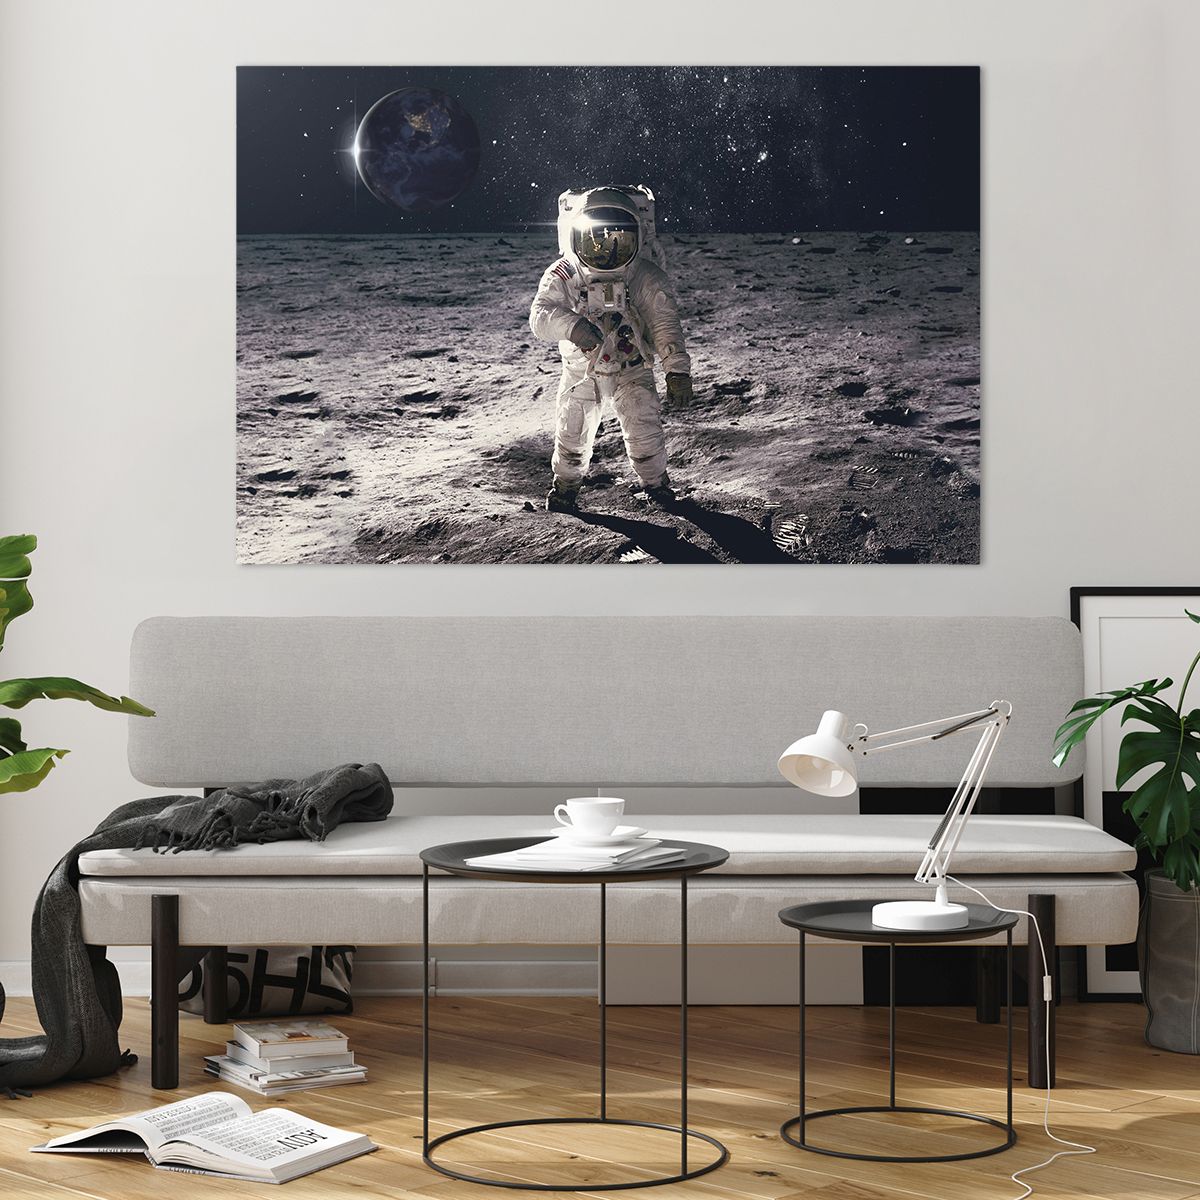 Obrazy na szkle Abstrakcja, Obrazy na szkle Człowiek Na Księżycu, Obrazy na szkle Astronauta, Obrazy na szkle Kosmos, Obrazy na szkle Księżyc